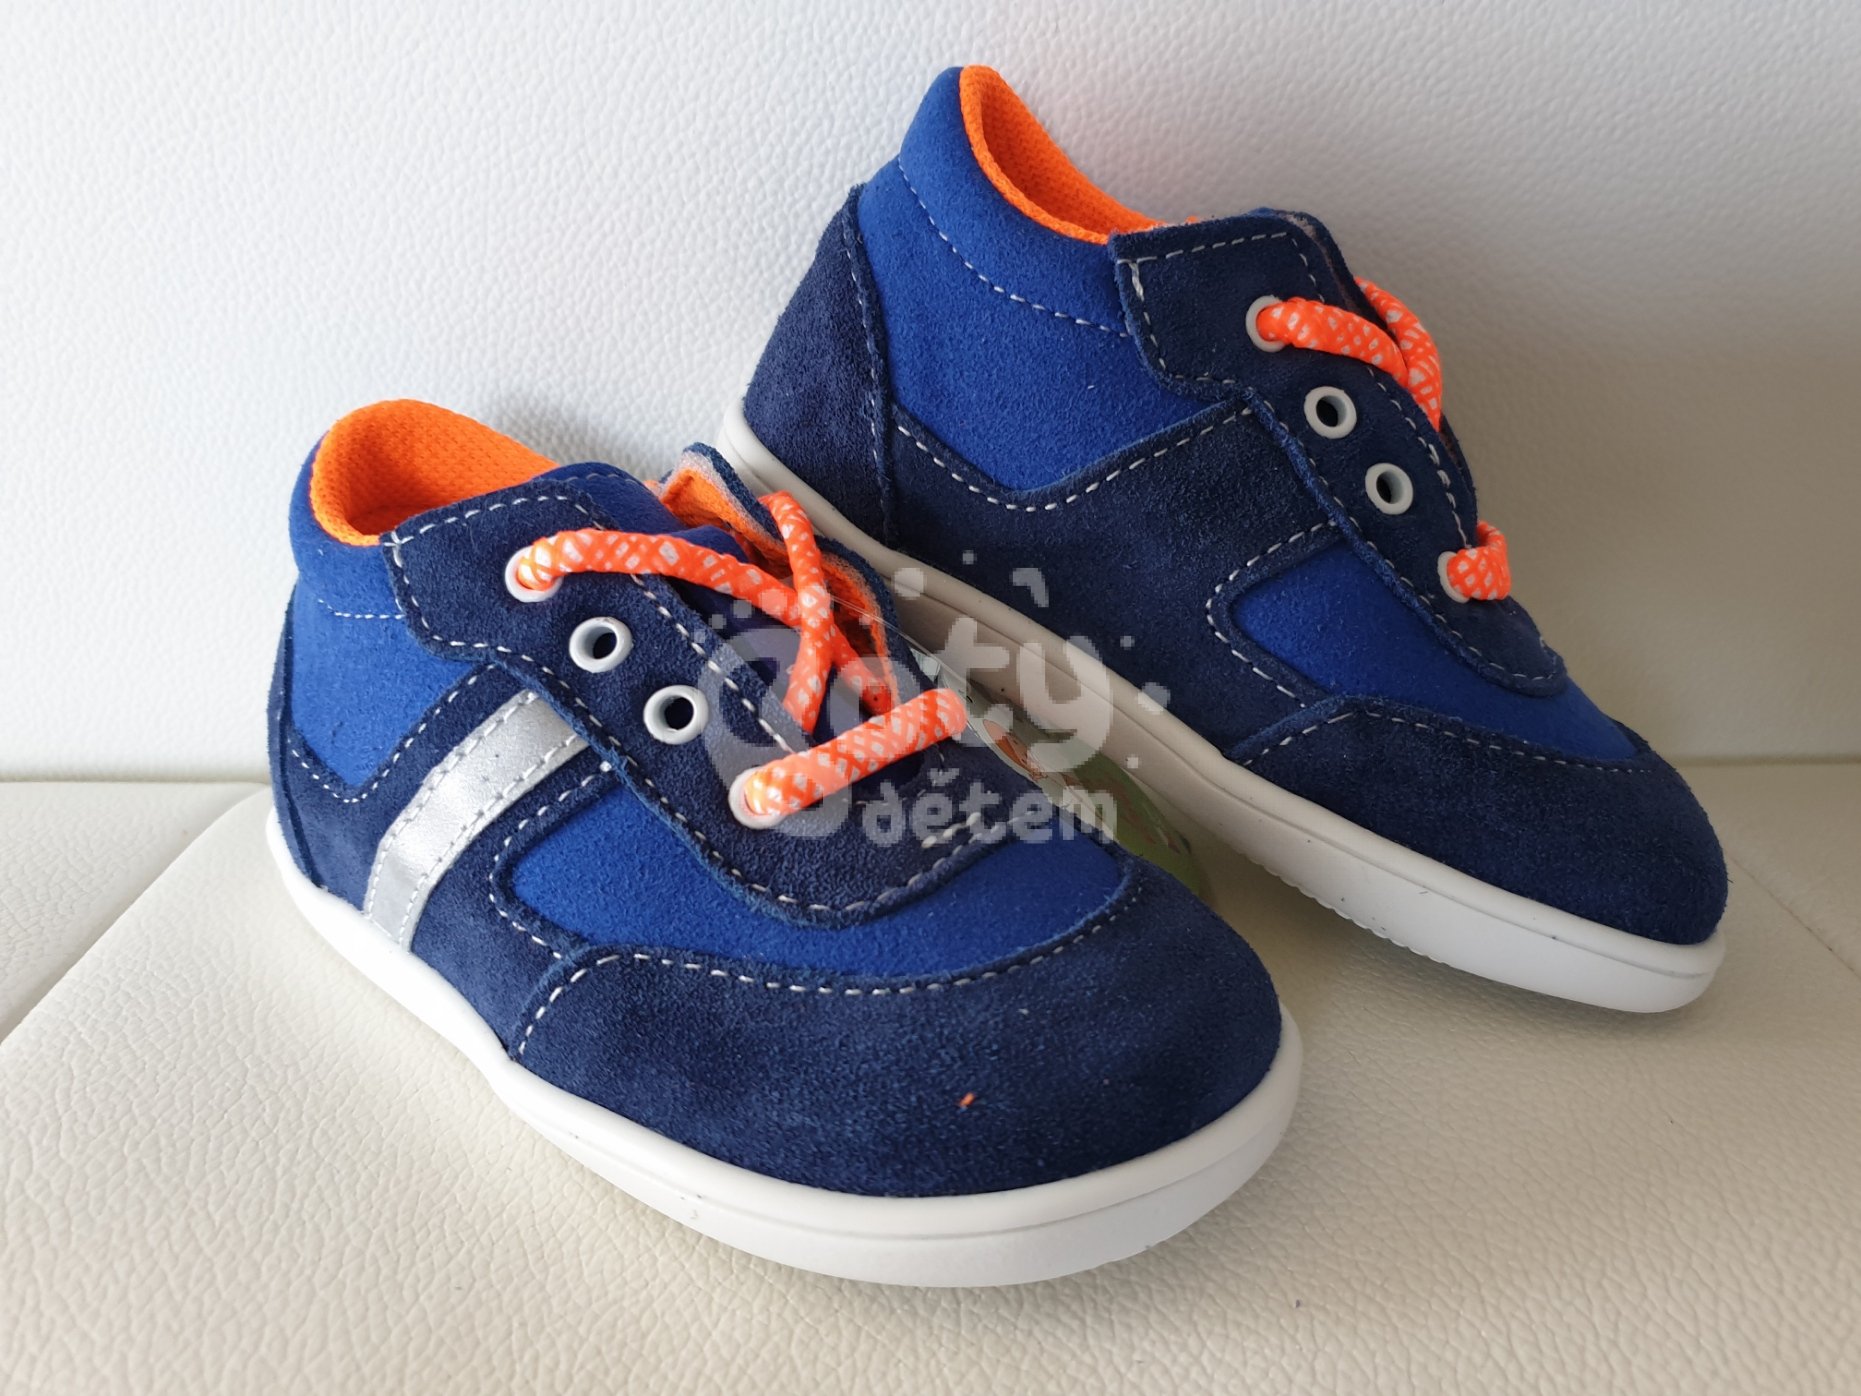 Jonap kožené boty 051S light modrá oranžová